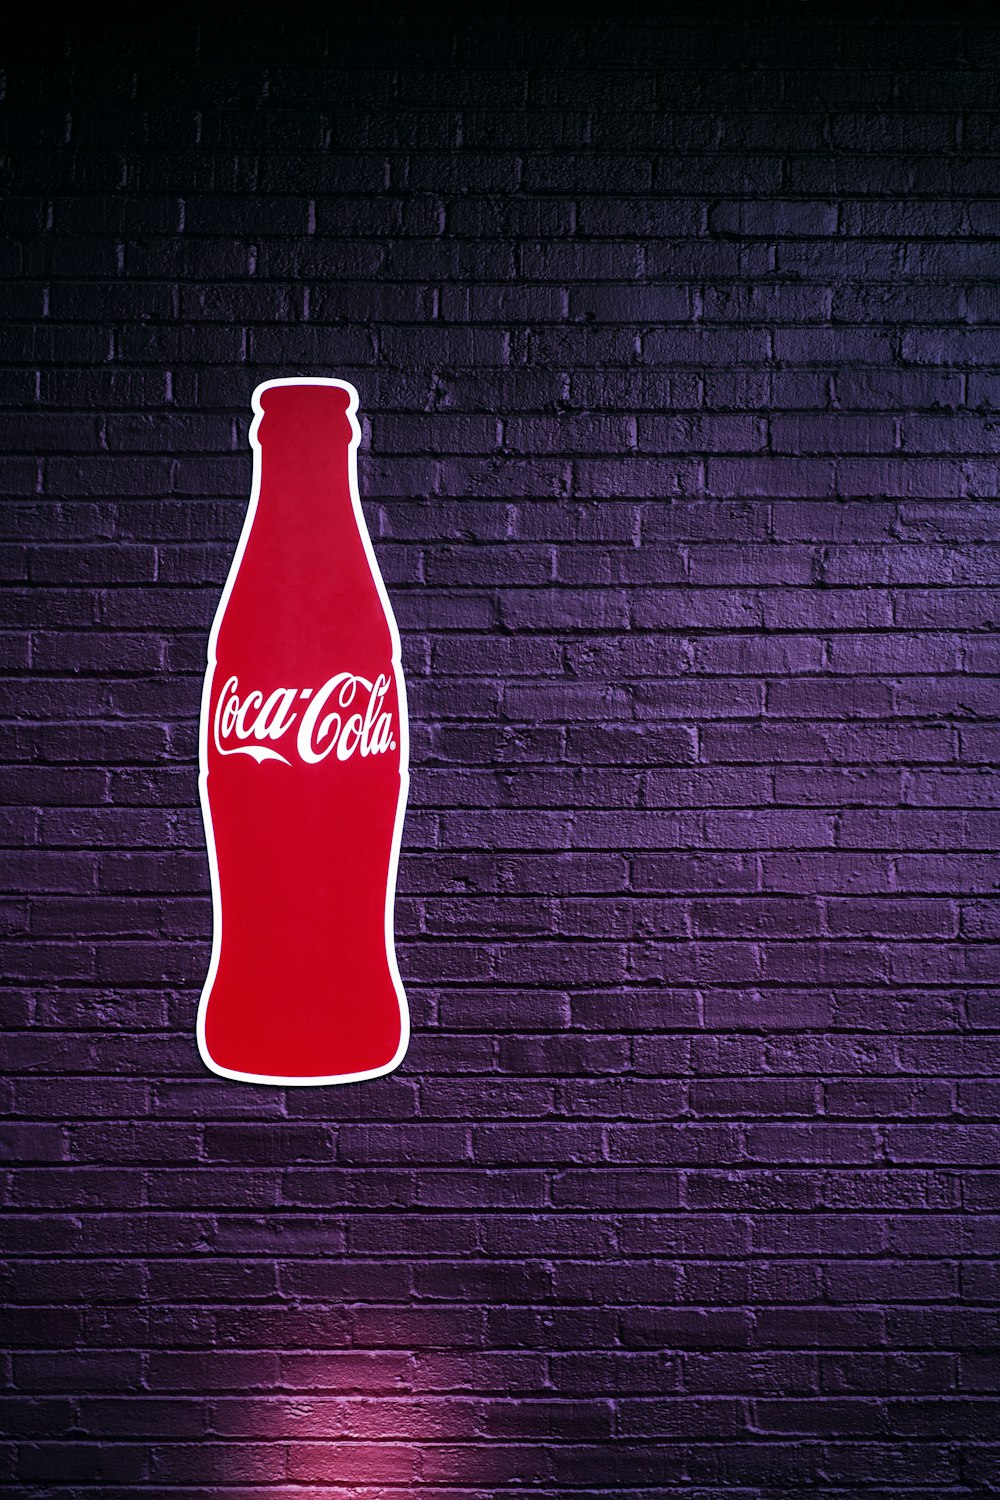 黒と白の縞模様の壁に赤のコカ コーラのボトルの写真 Unsplashで見つけるアメリカ合衆国の無料写真